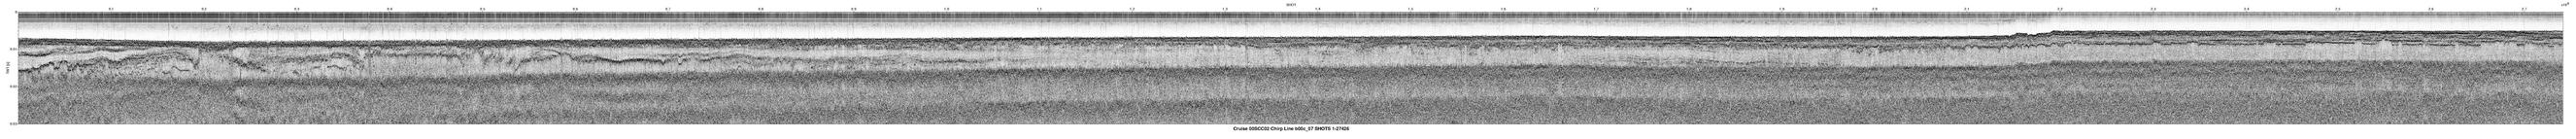 00SCC02 b00c_07 seismic profile image